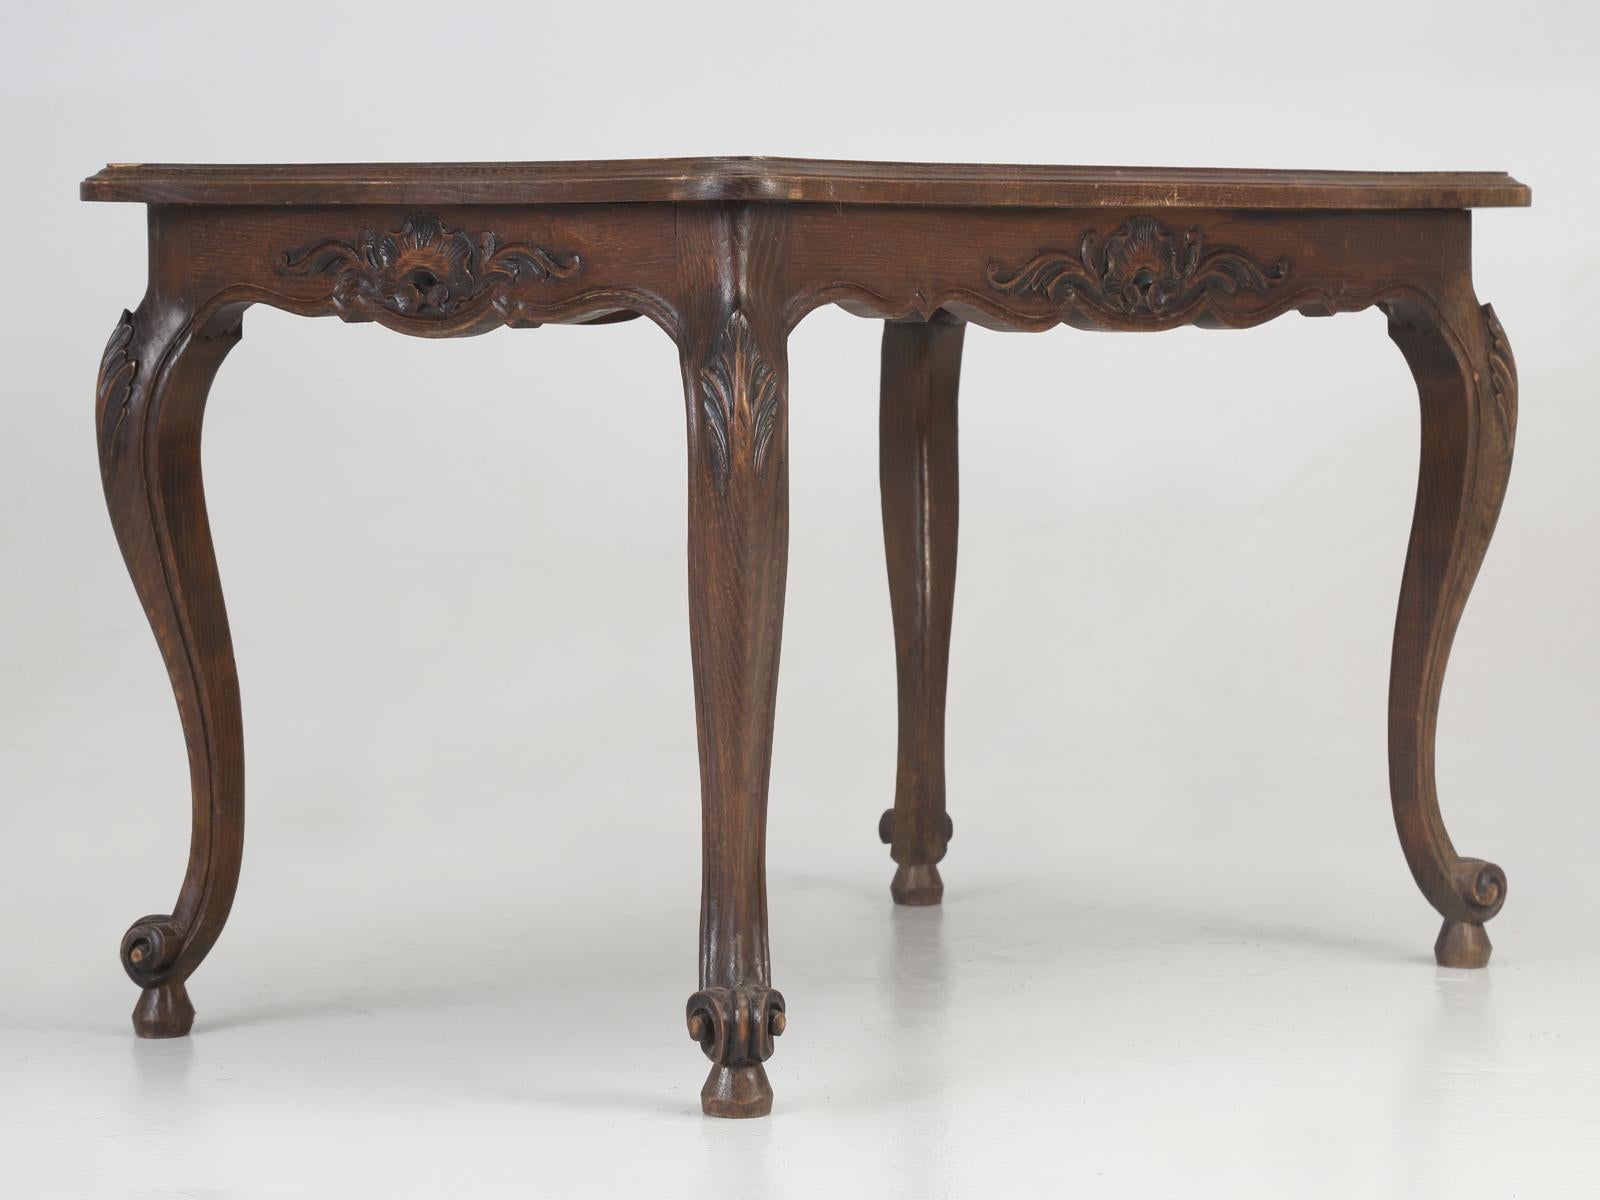 Französischer Beistelltisch im Stil Louis XV in unrestauriertem Originalzustand. Unsere Restaurierungsabteilung kann den Tisch sicherlich restaurieren, aber sobald ich es dunkel mache, wird sicherlich jemand diesen Beistelltisch im Stil Louis XV